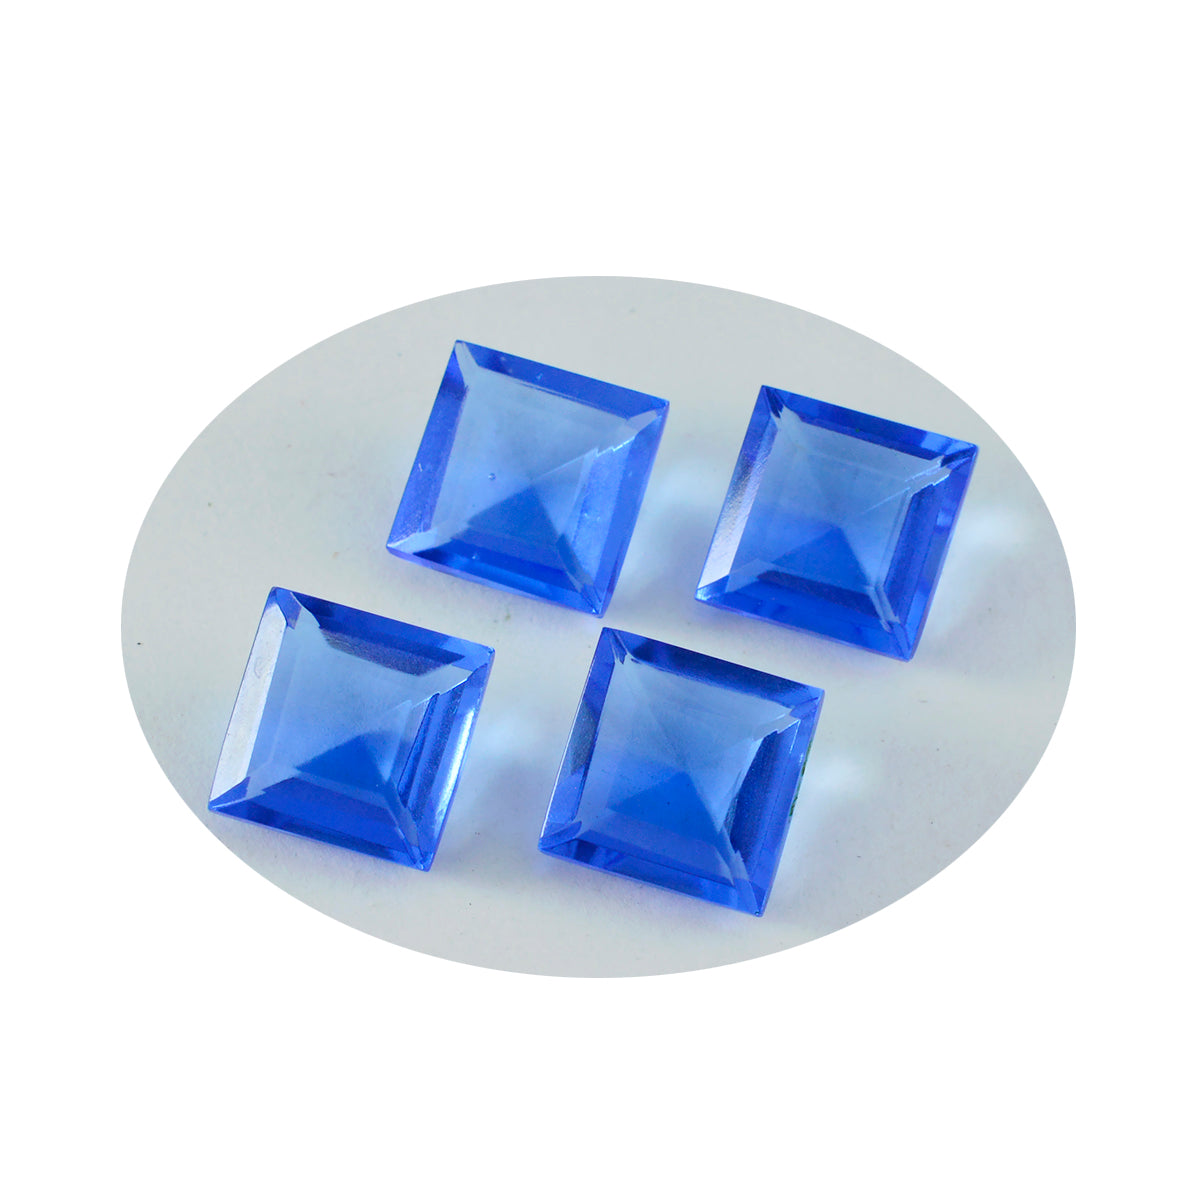 Riyogems 1PC blauwe saffier CZ gefacetteerd 11x11 mm vierkante vorm mooie kwaliteit losse edelstenen